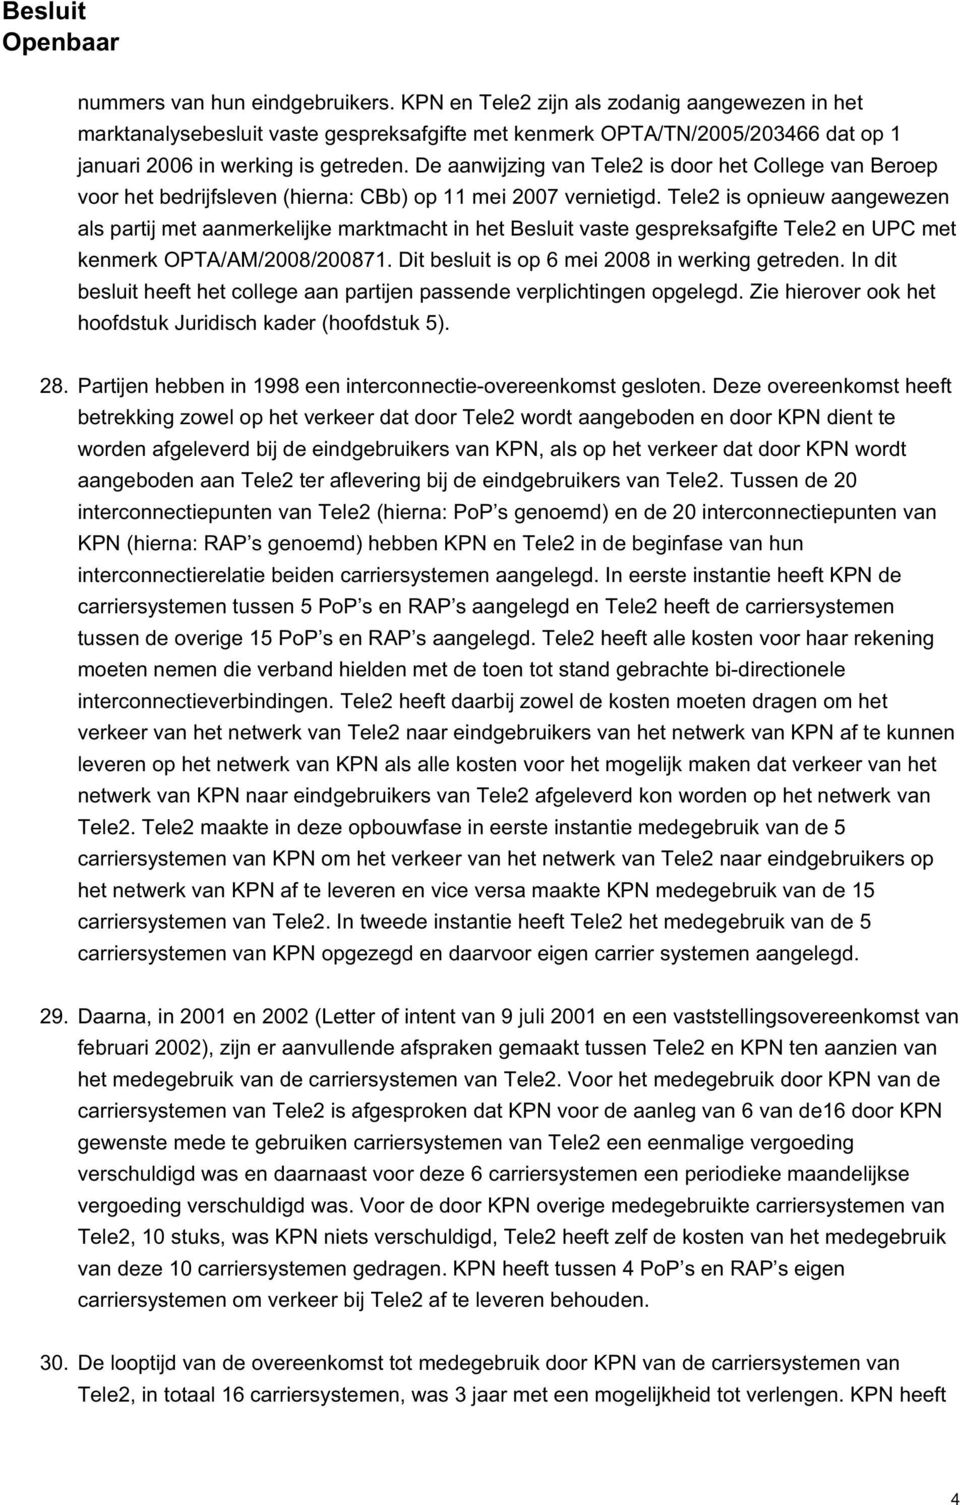 Tele2 is opnieuw aangewezen als partij met aanmerkelijke marktmacht in het Besluit vaste gespreksafgifte Tele2 en UPC met kenmerk OPTA/AM/2008/200871. Dit besluit is op 6 mei 2008 in werking getreden.